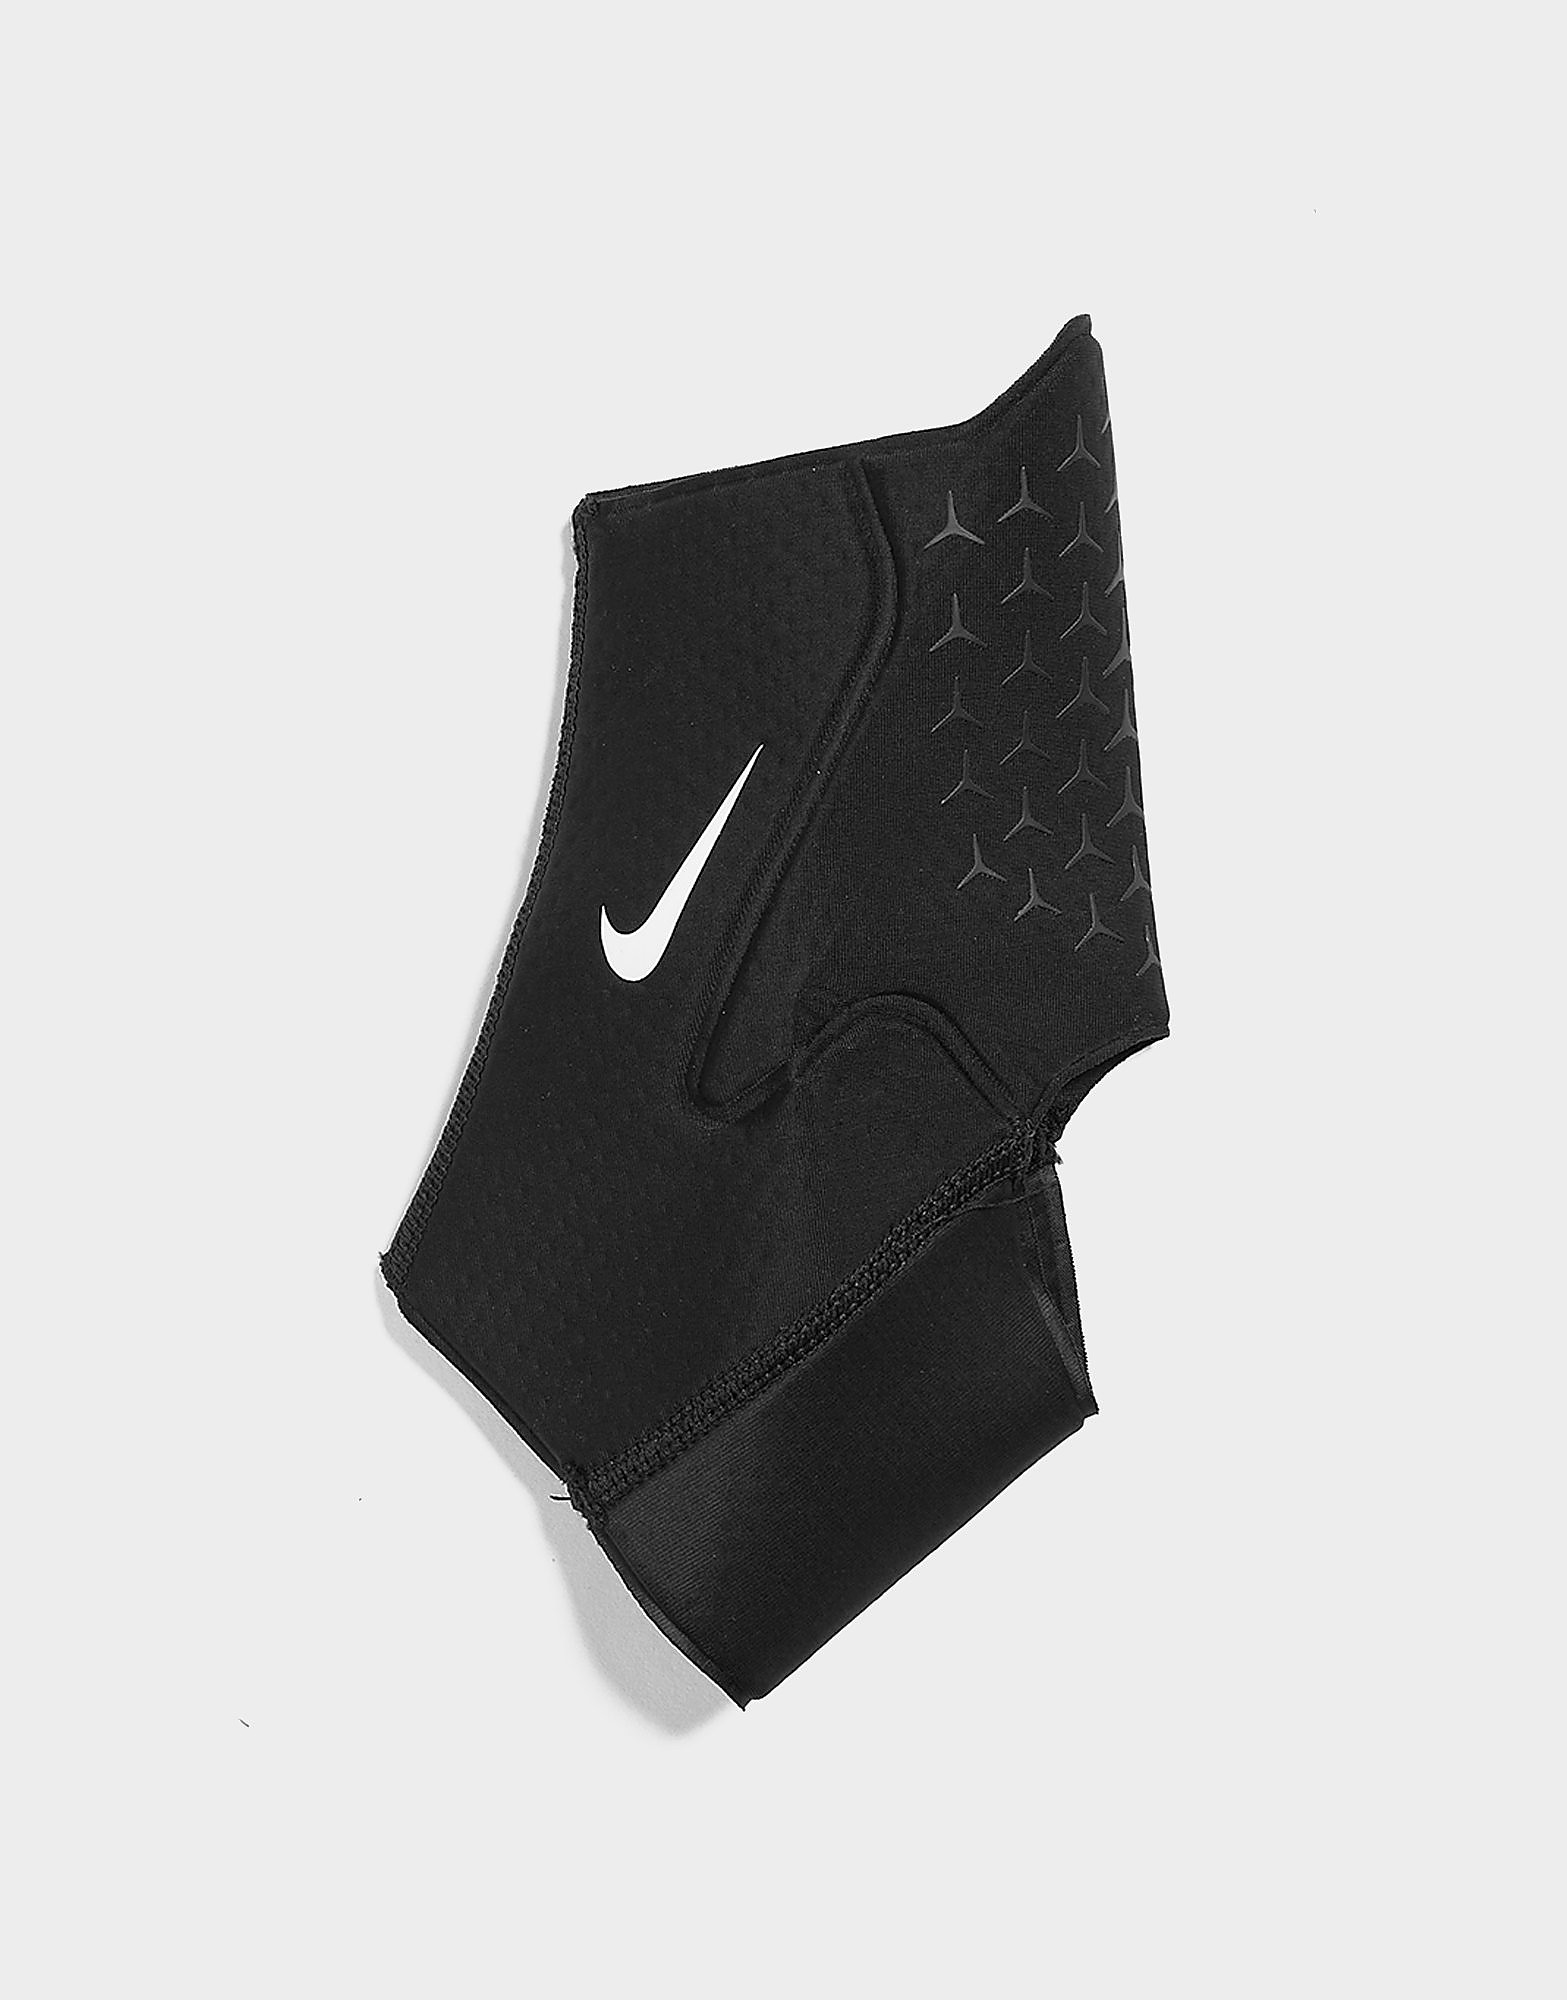 Nike pro nilkkatuki - mens, musta, nike